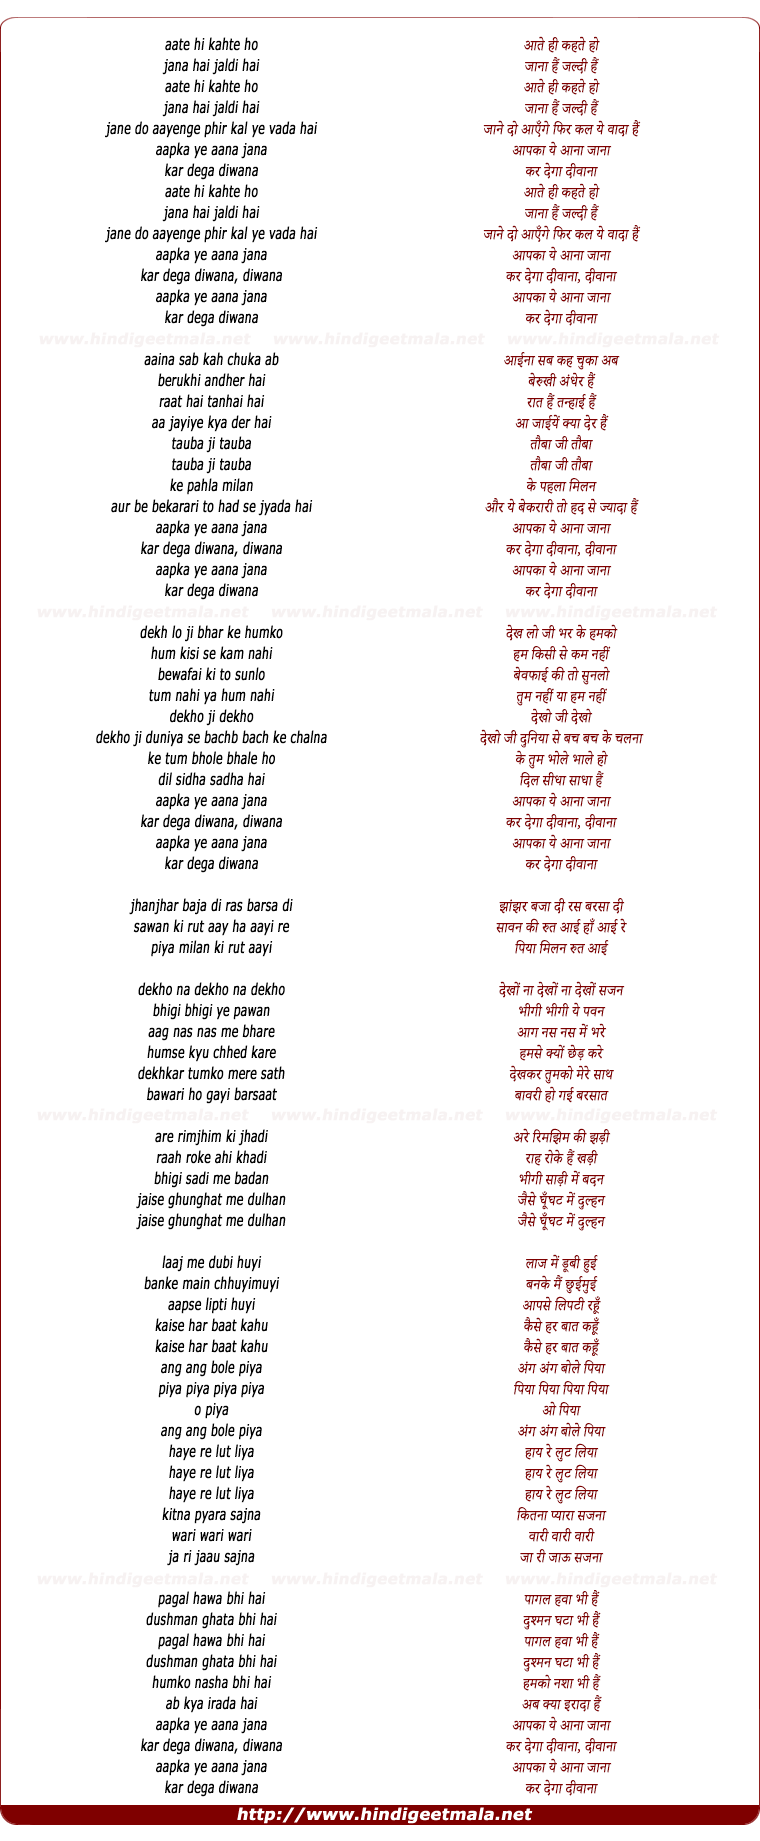 lyrics of song Aate Hi Kahte Ho, Jana Hai Jaldi Hai